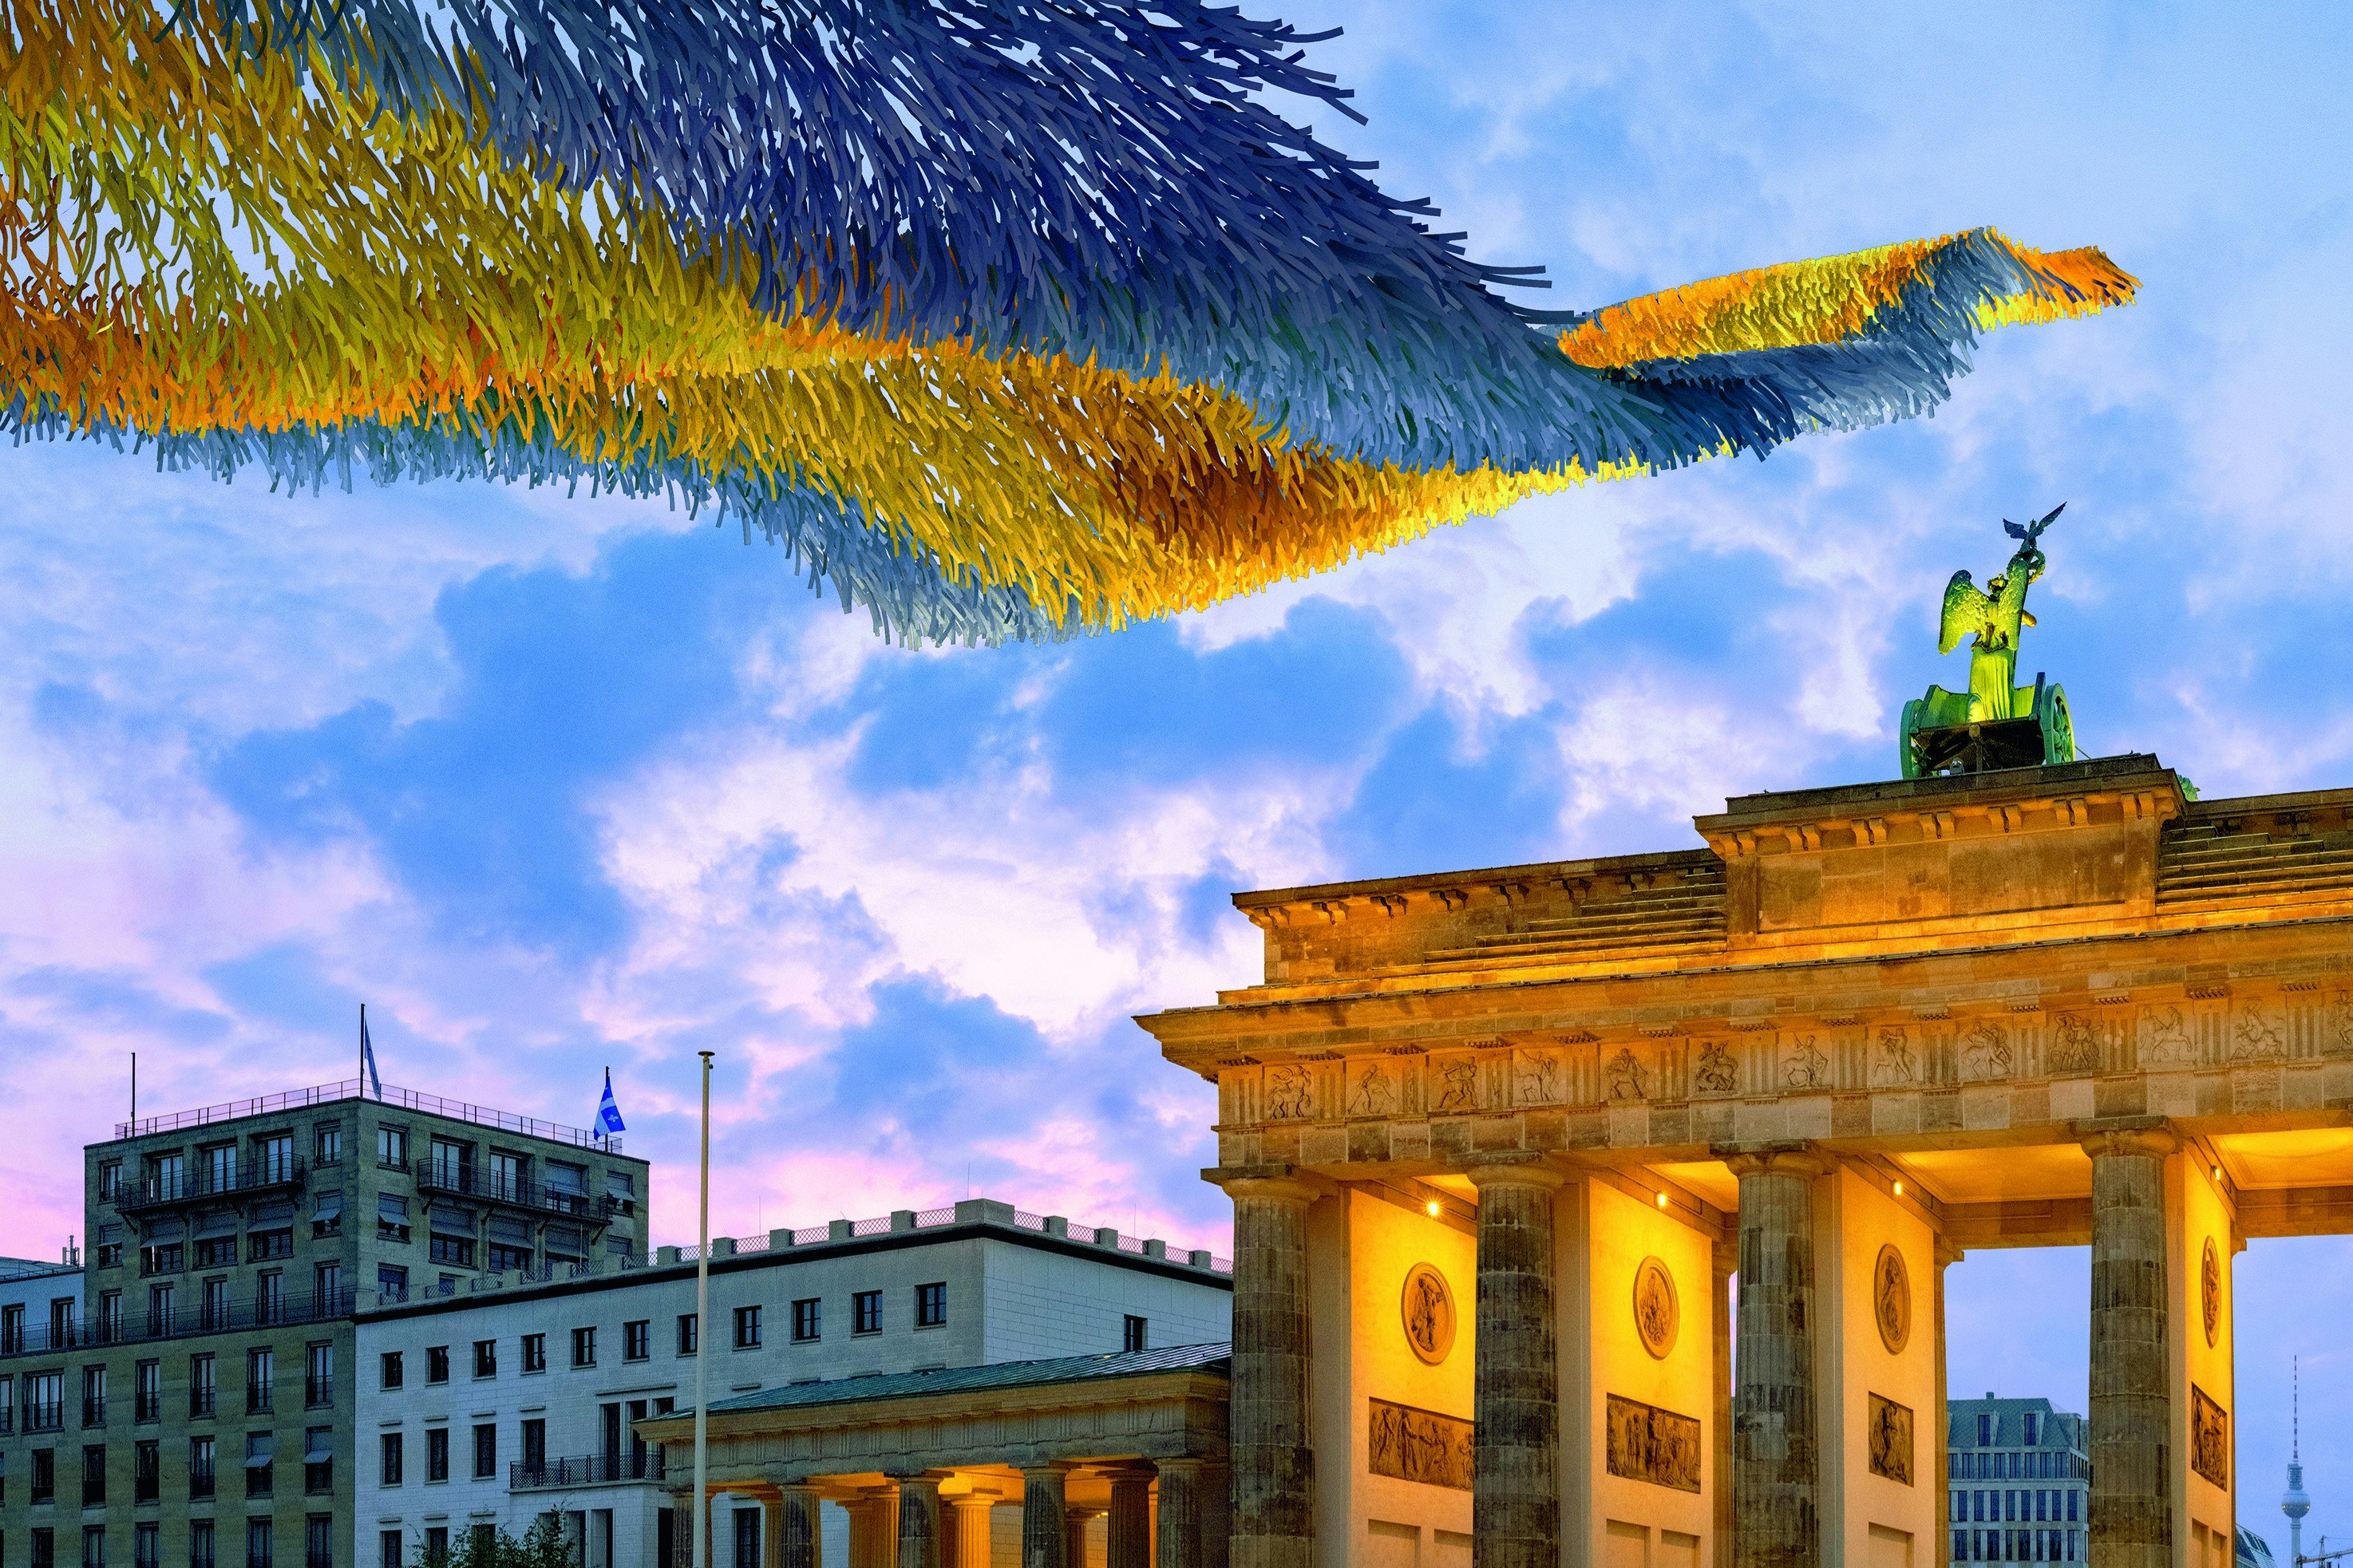 The art installation in front of Brandenburg Gate